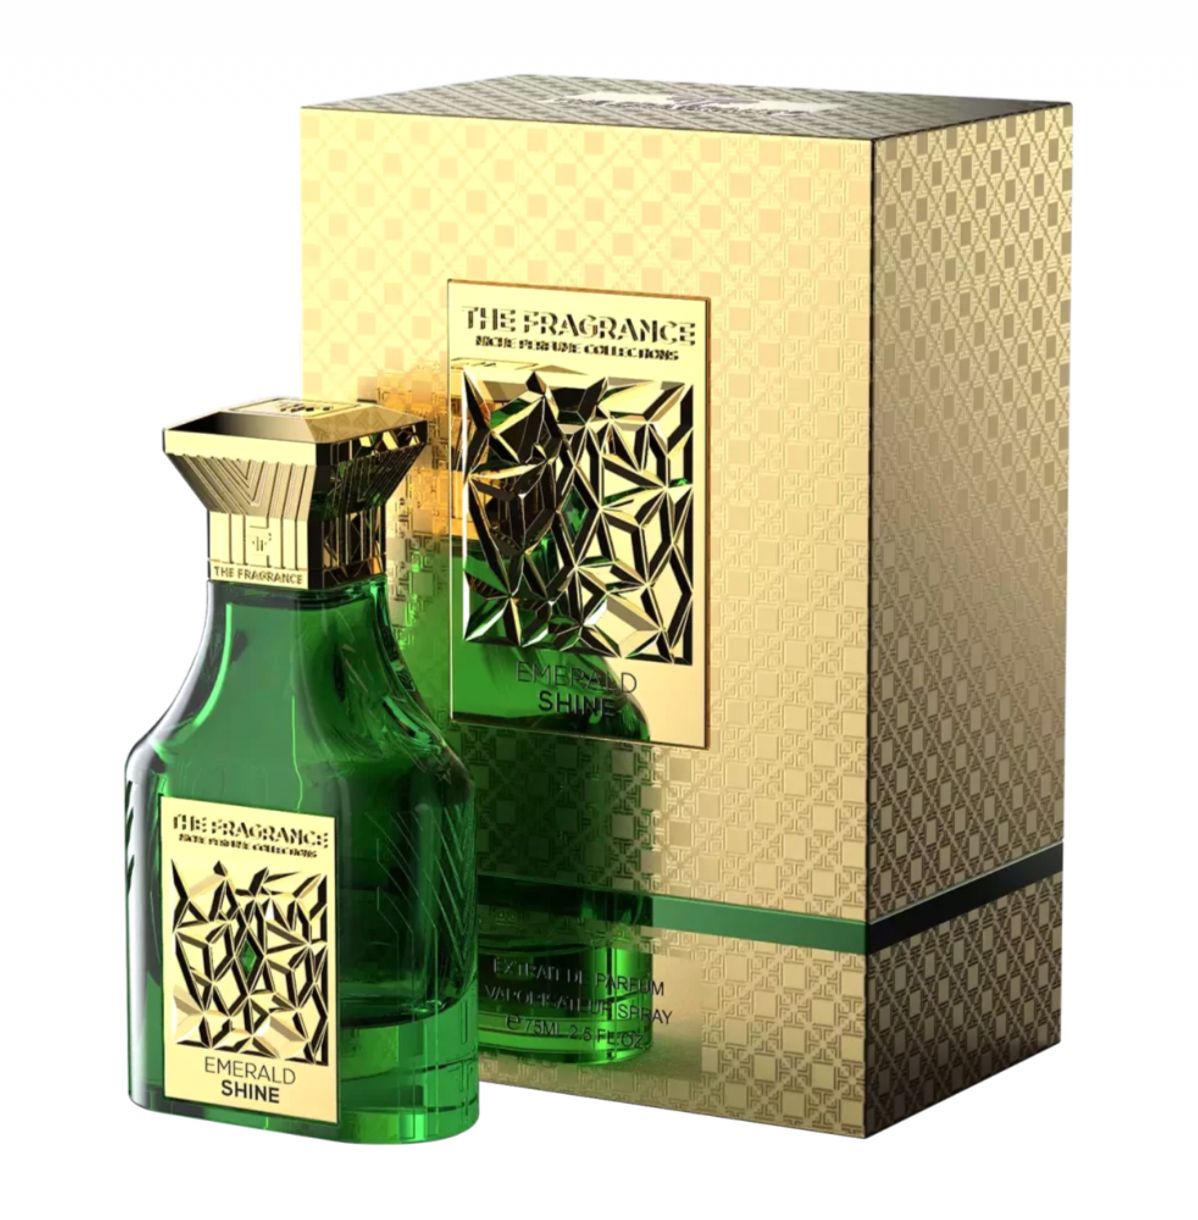 Emerald Shine The Fragrance parfem - parfem za žene i muškarce